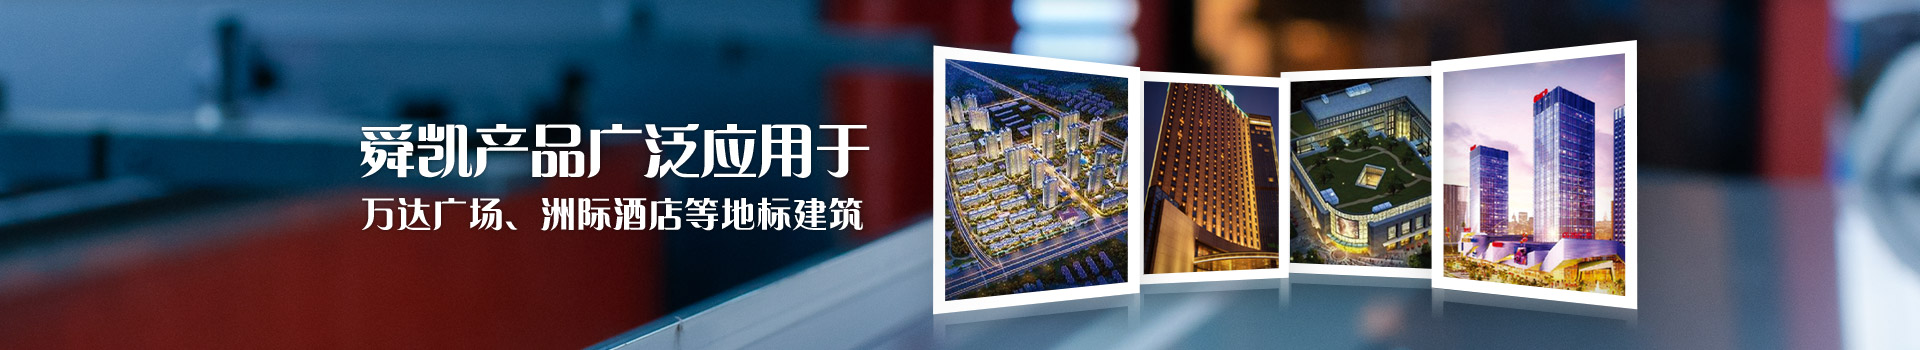 舜凯产品广泛应用于吾悦广场、万达广场、洲际酒店等全国性地标建筑